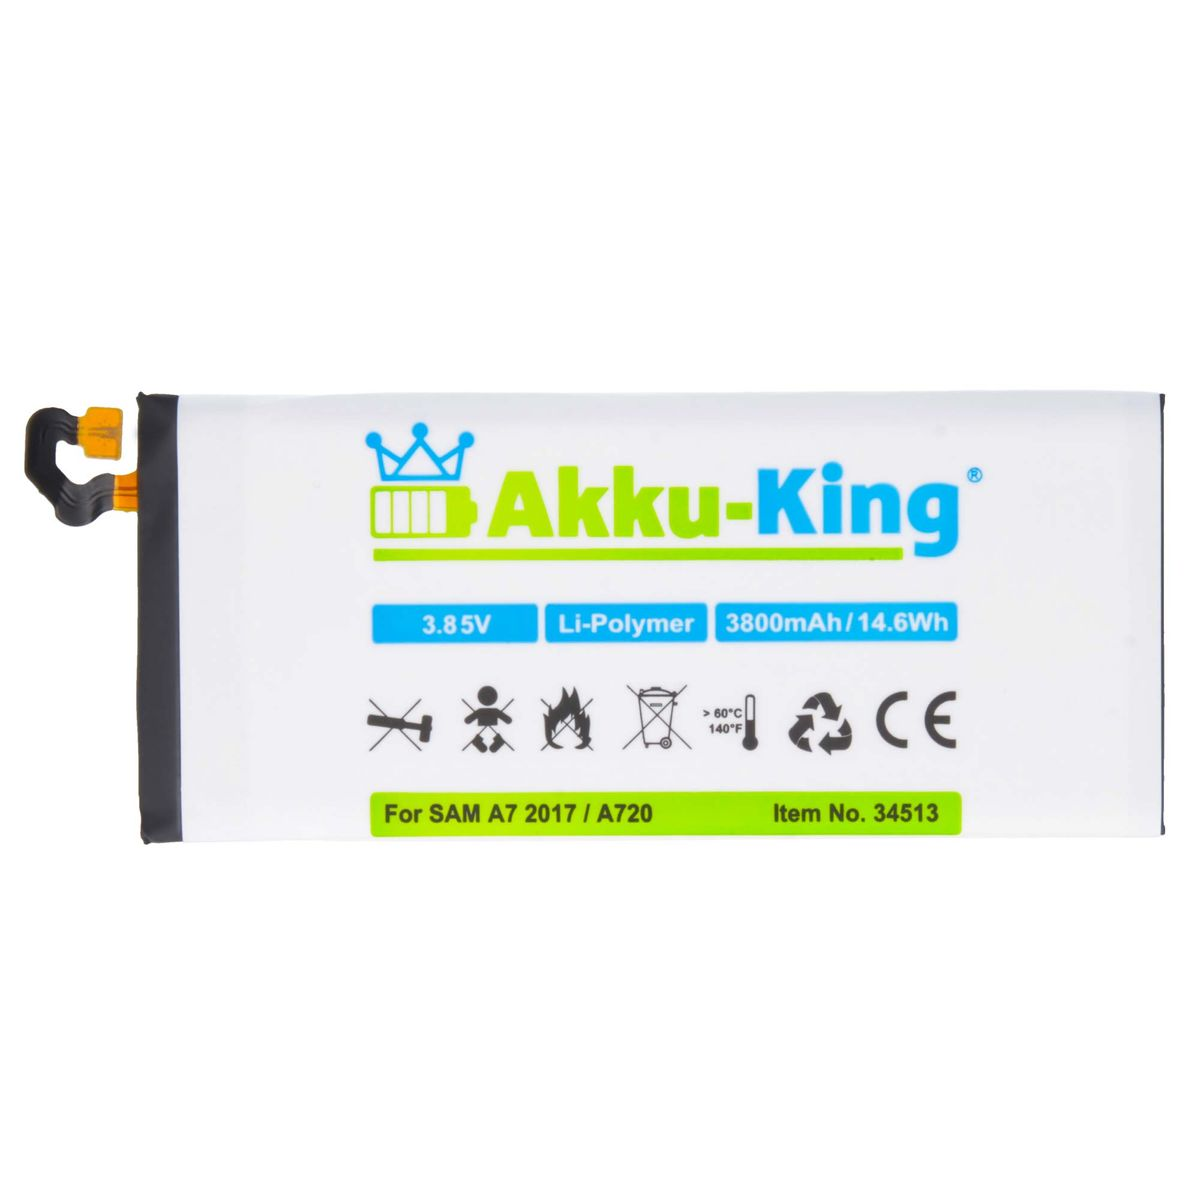 Samsung EB-BA720ABE AKKU-KING Akku kompatibel Handy-Akku, 3.85 3800mAh mit Volt, Li-Polymer